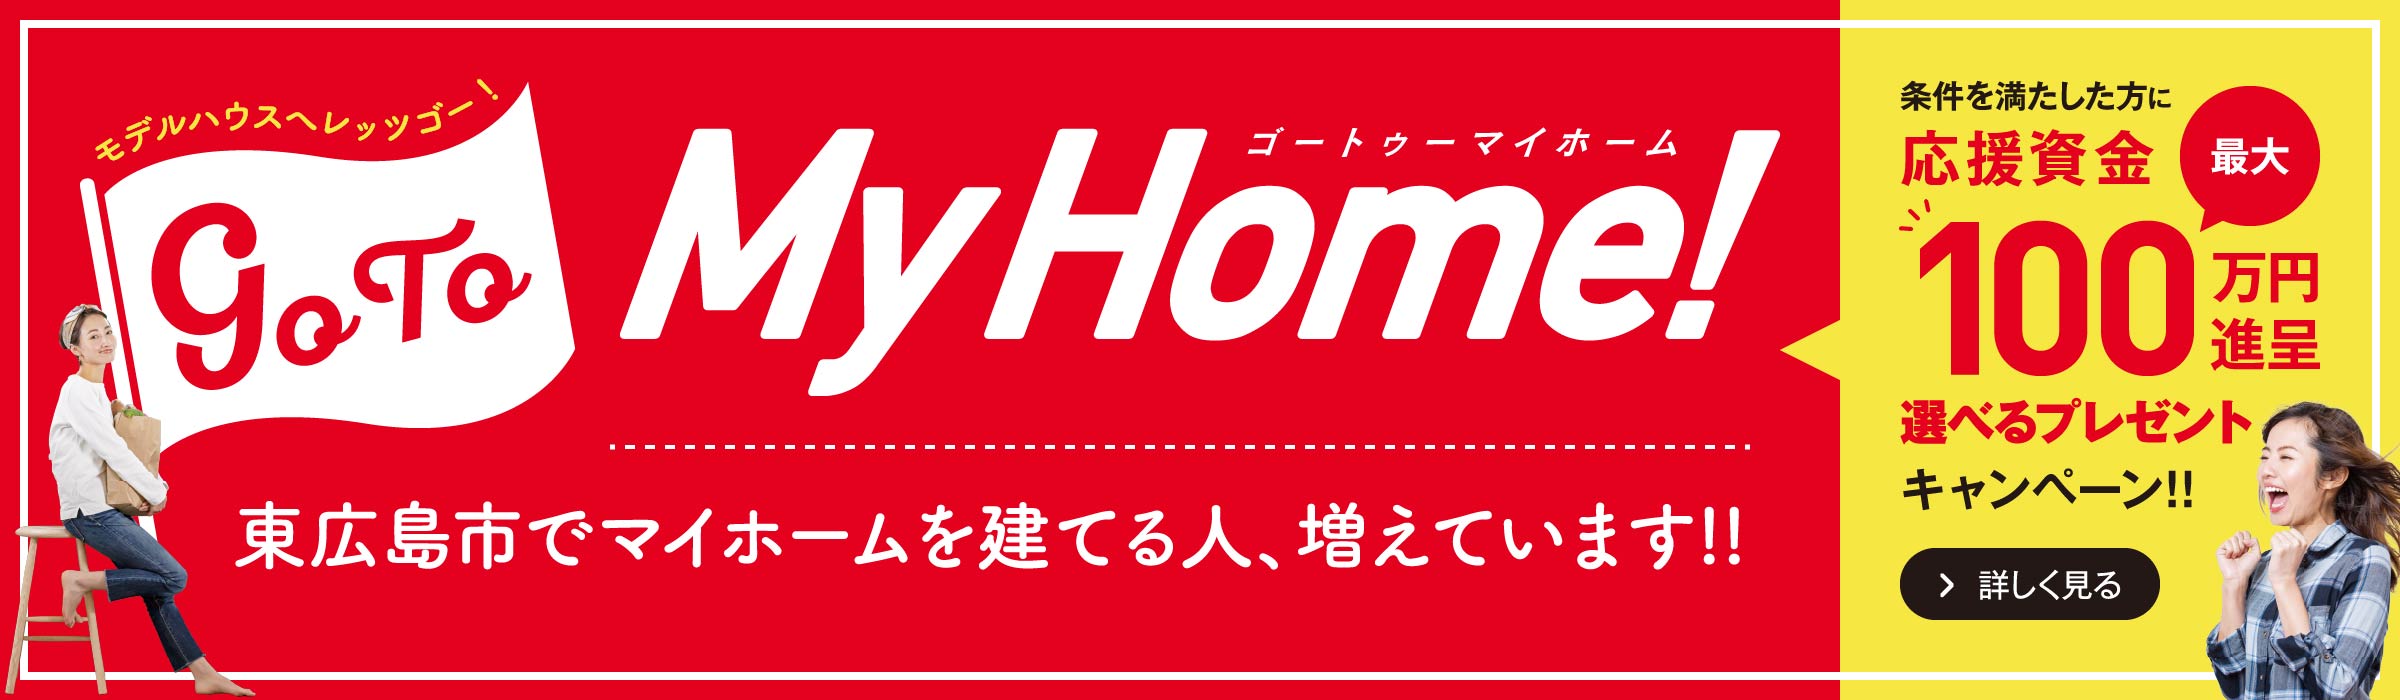 【広島から東広島へ】Go to My Home!!